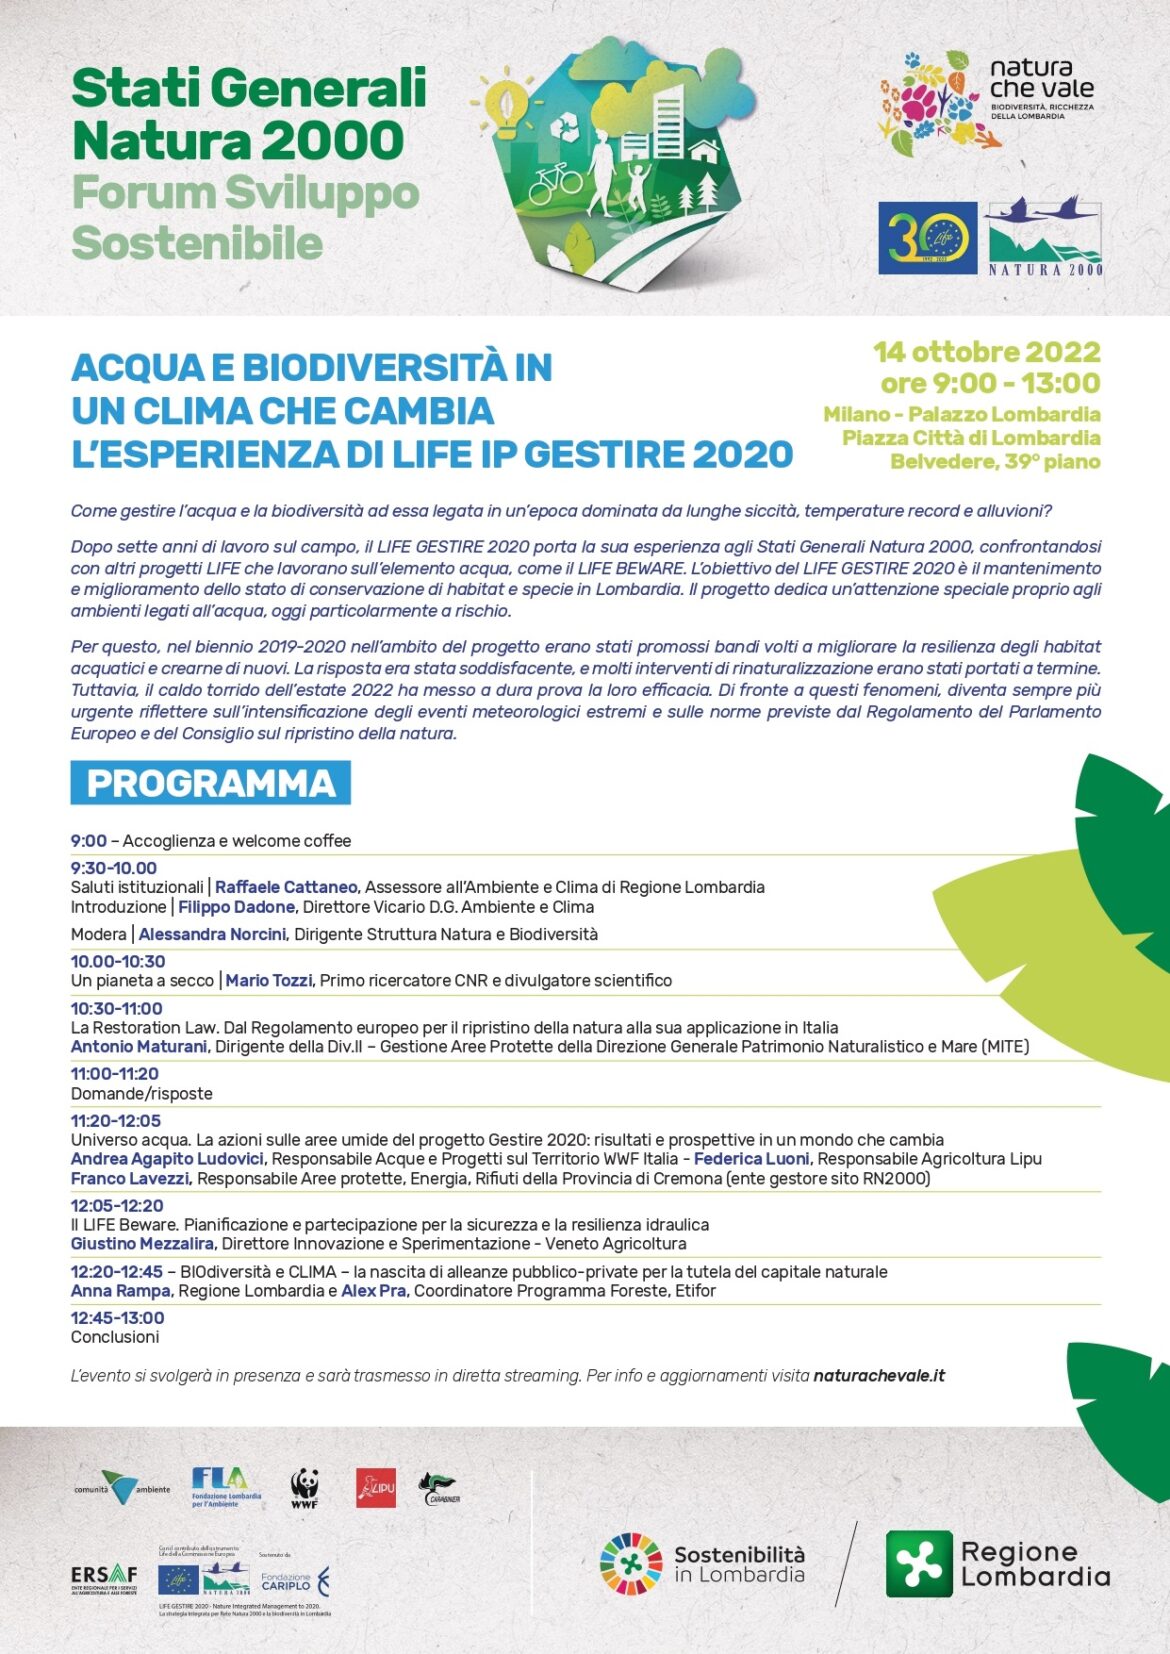 Programma-Stati-generali-Natura-2000-14-ottobre-2022.jpg